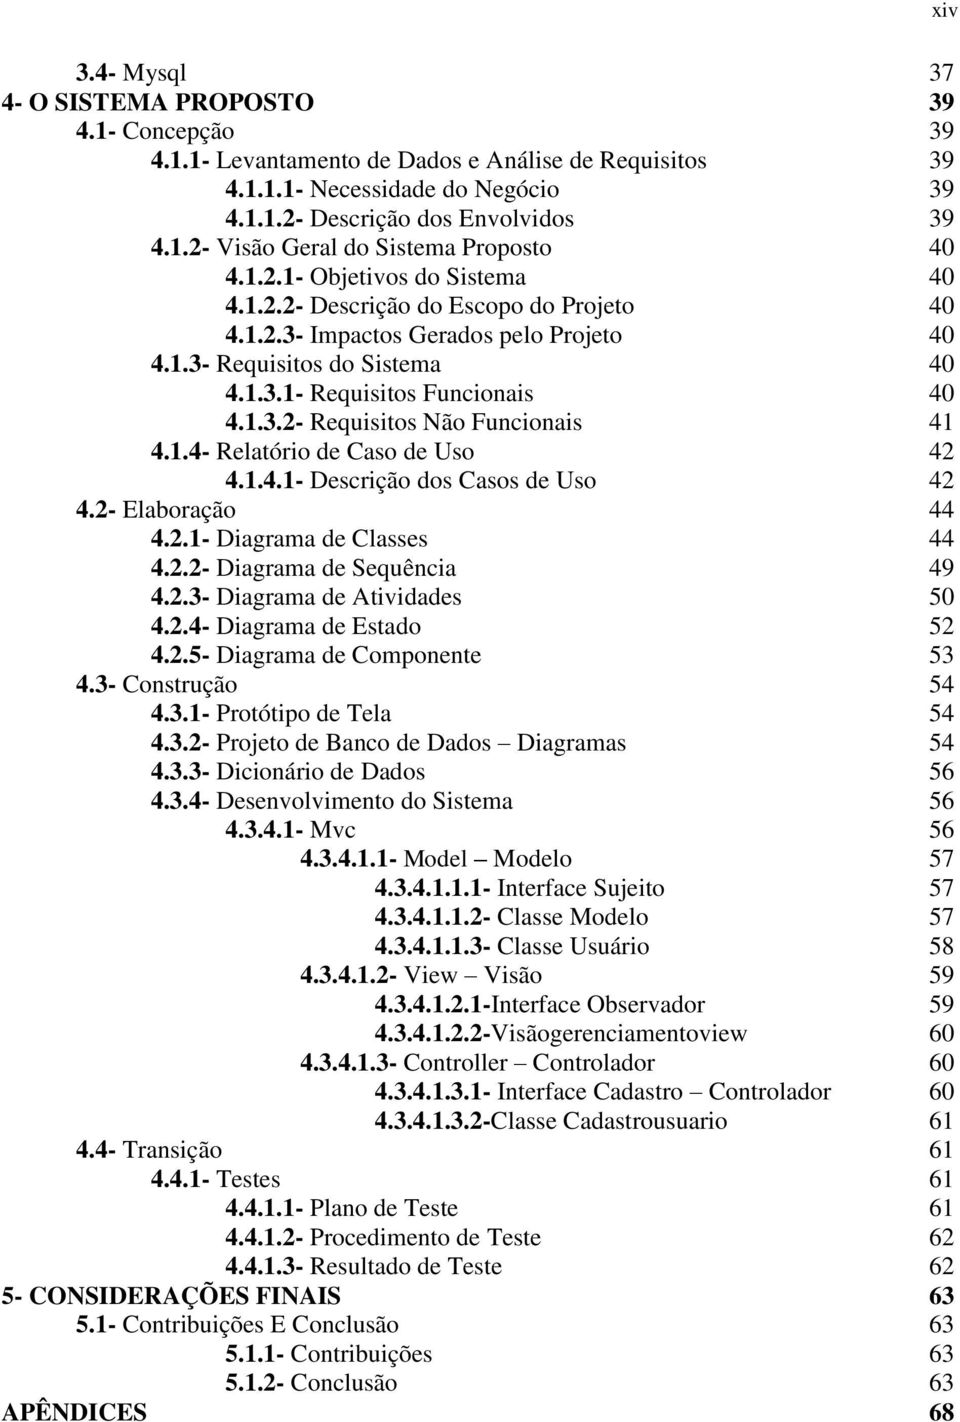 1.4- Relatório de Caso de Uso 42 4.1.4.1- Descrição dos Casos de Uso 42 4.2- Elaboração 44 4.2.1- Diagrama de Classes 44 4.2.2- Diagrama de Sequência 49 4.2.3- Diagrama de Atividades 50 4.2.4- Diagrama de Estado 52 4.